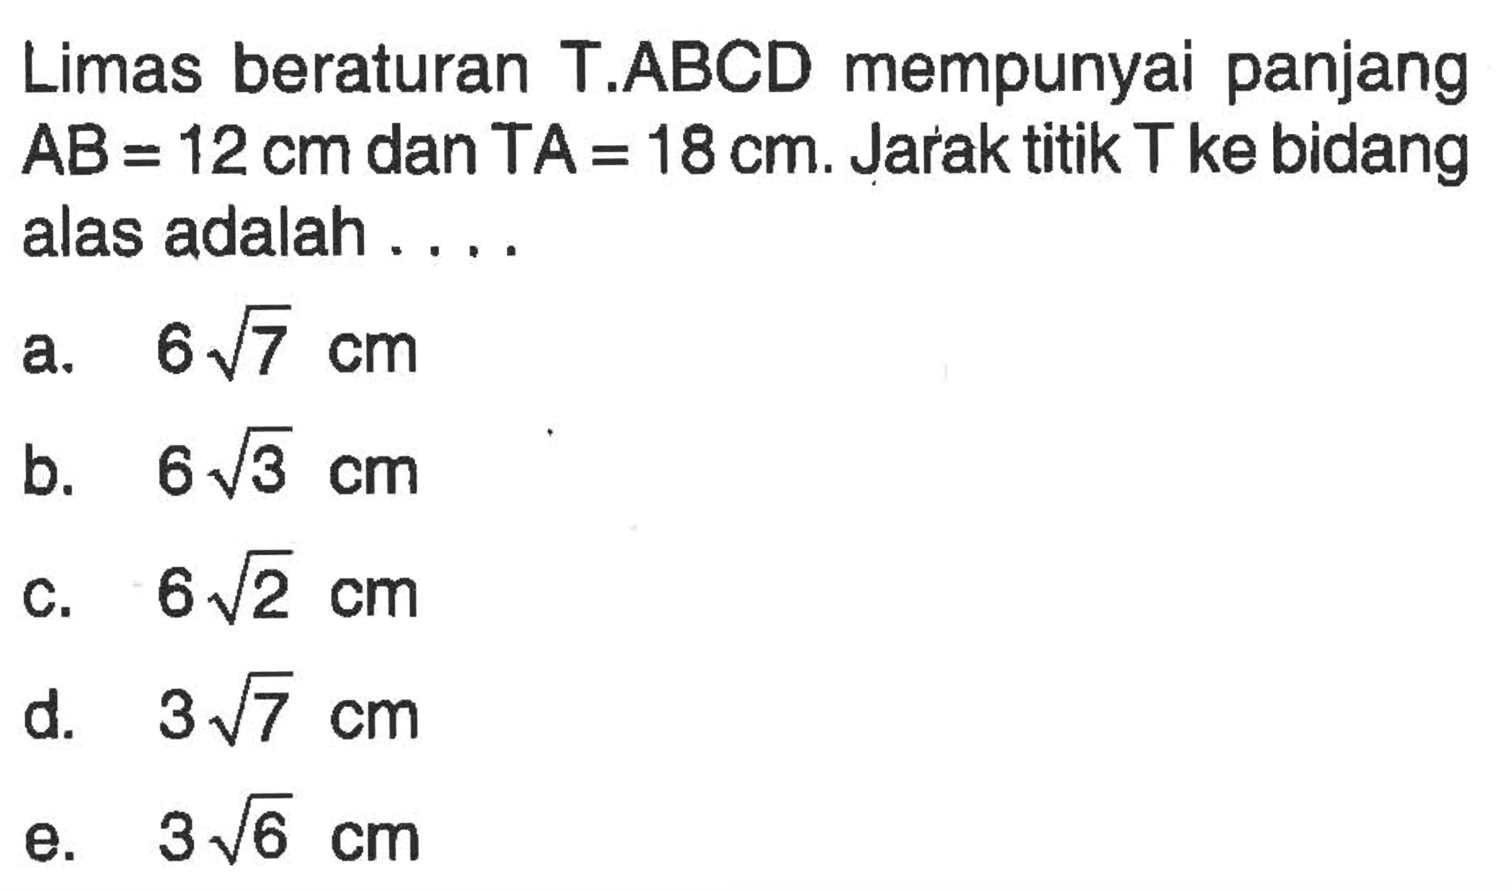 Limas beraturan T.ABCD mempunyai panjang AB = 12cm dan TA = 18 cm. Jarak titik T ke bidang alas adalah . . . .